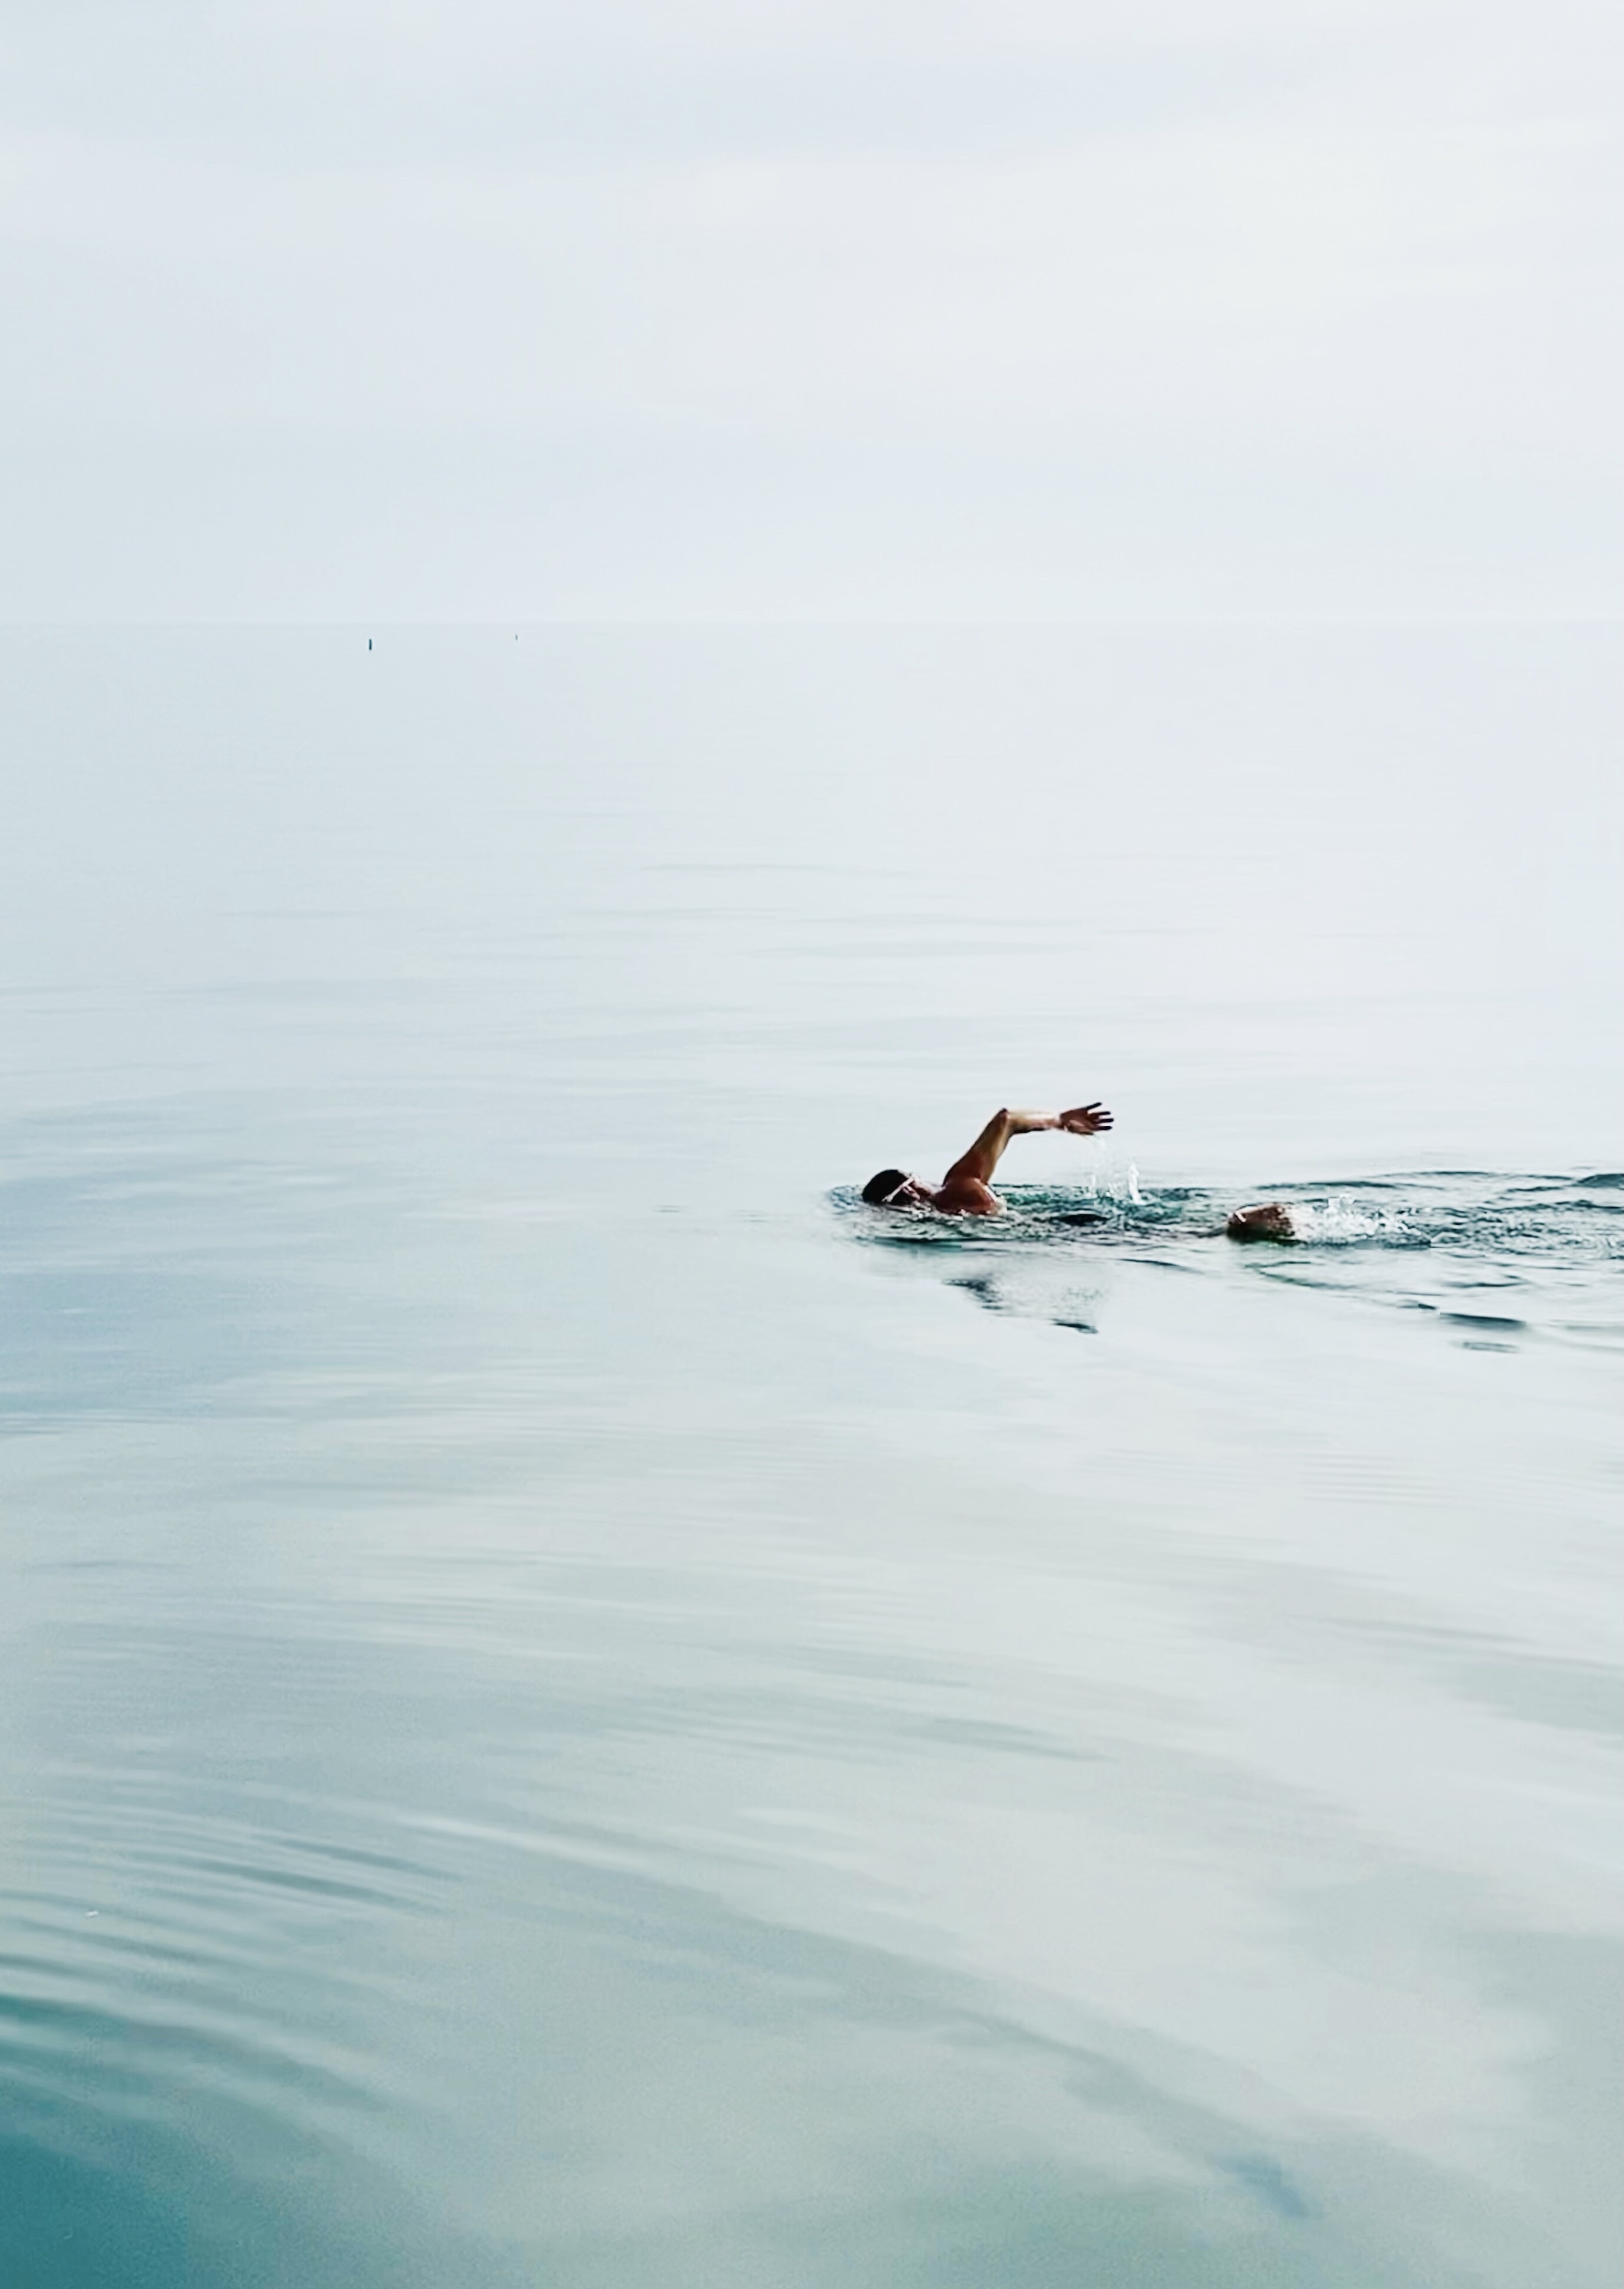 Финалист в категории Мобильная фотография, 2021. Пловец на озере Мичиган, Иллинойс, США. Автор Мег Винсент